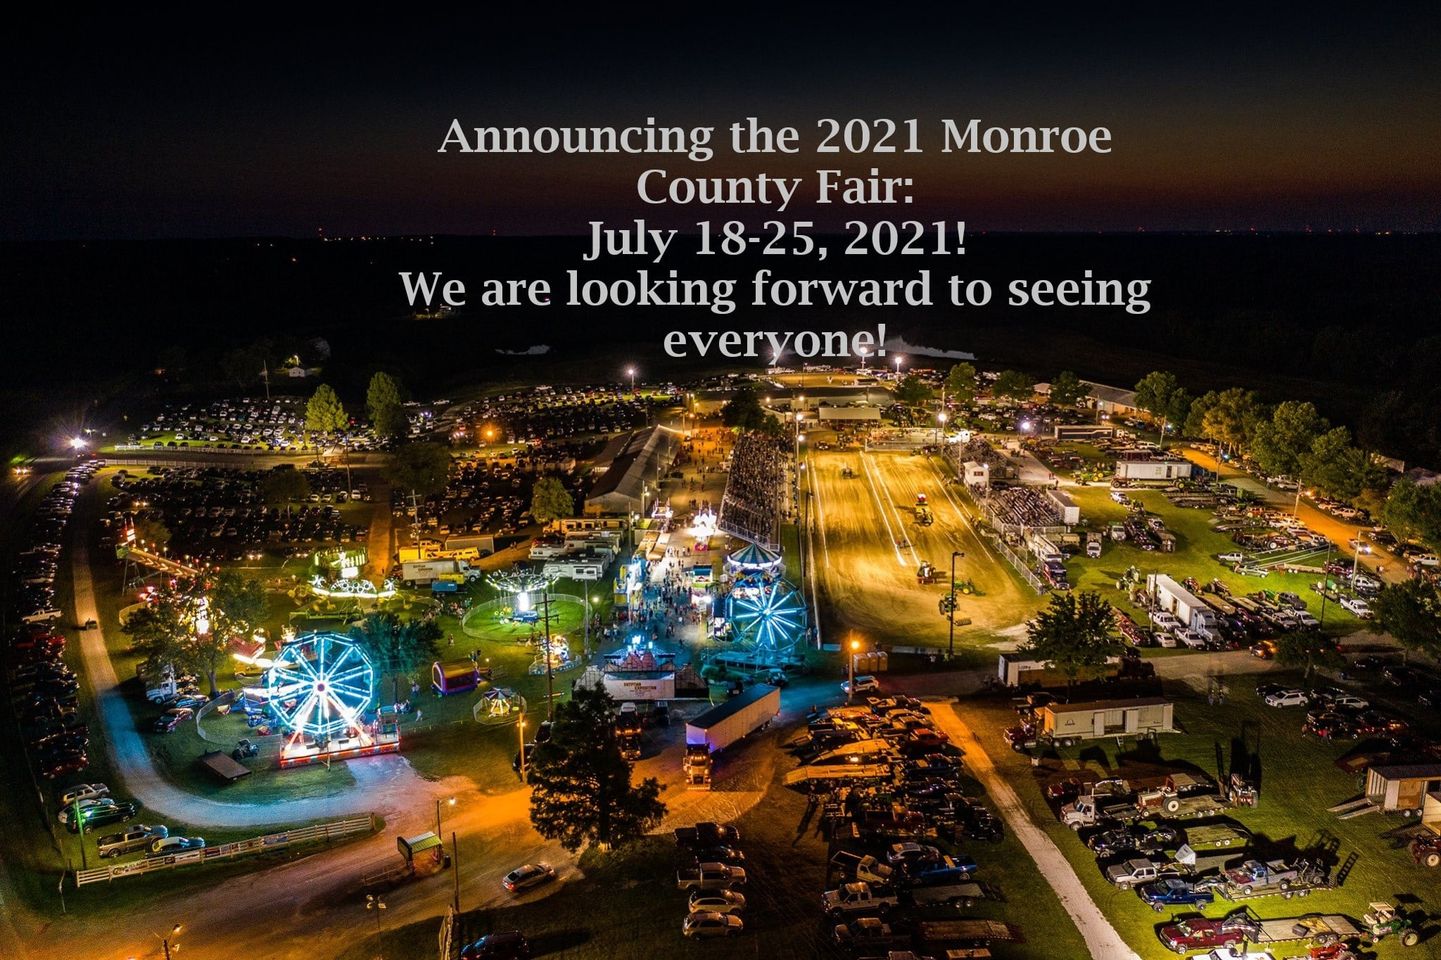 Monroe County Fair